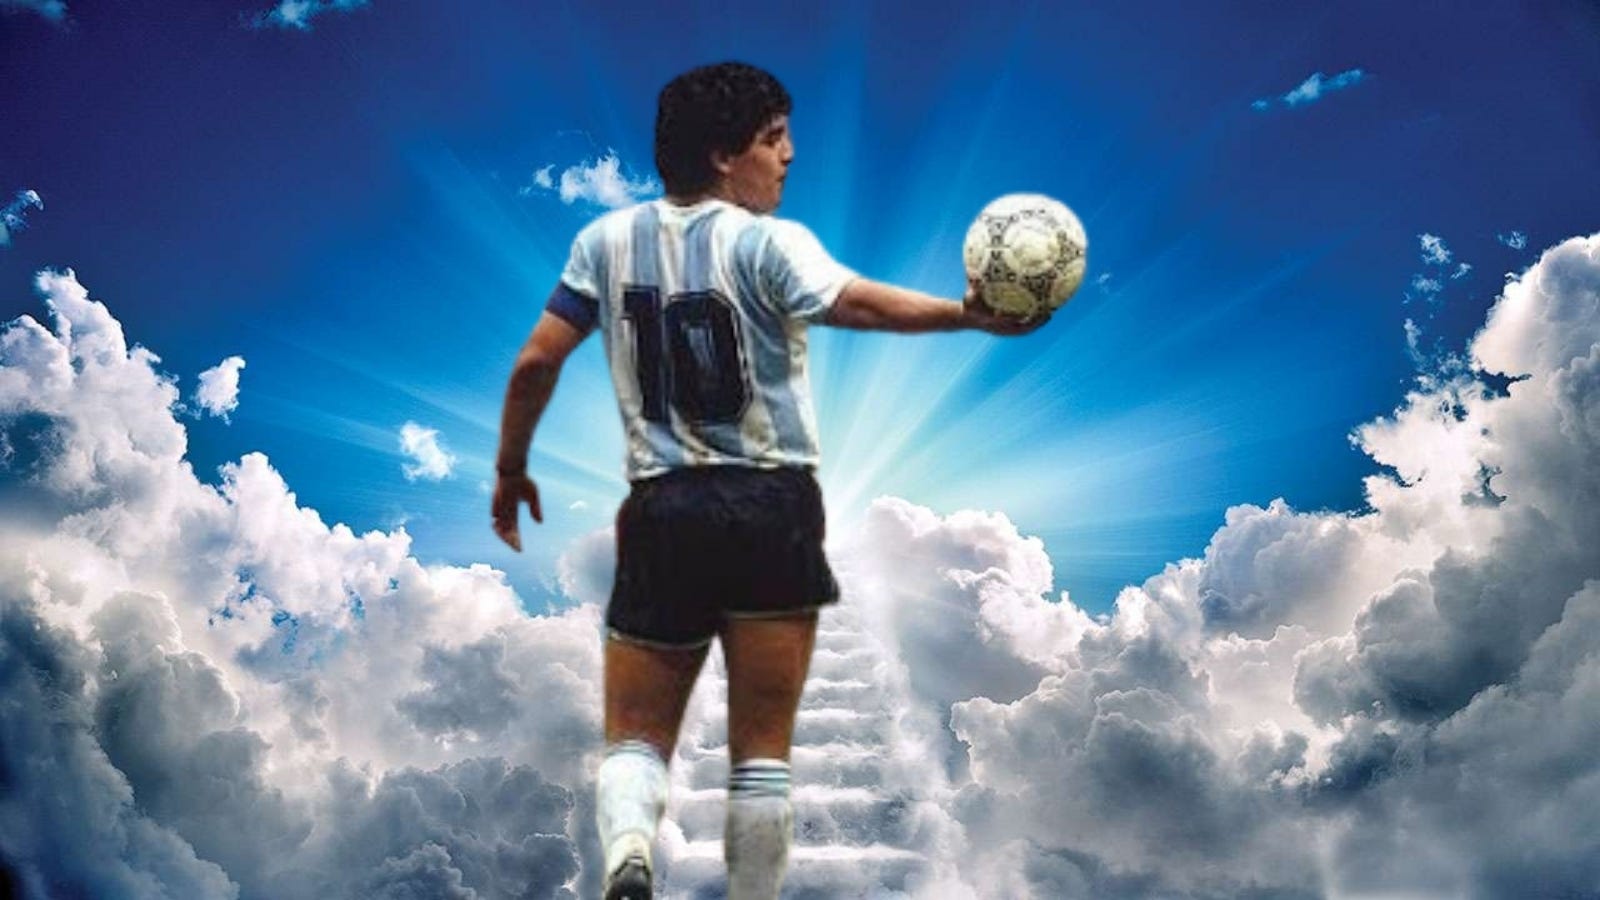 Maradona hoặc Messi: Những hình ảnh cảm động về hai huyền thoại bóng đá Diego Maradona và Lionel Messi sẽ đưa bạn vào chuyến du hành qua thời gian và những trận đấu đáng nhớ. Nếu bạn là fan của bất kỳ cầu thủ nào, bạn sẽ không thể bỏ qua những hình ảnh này.